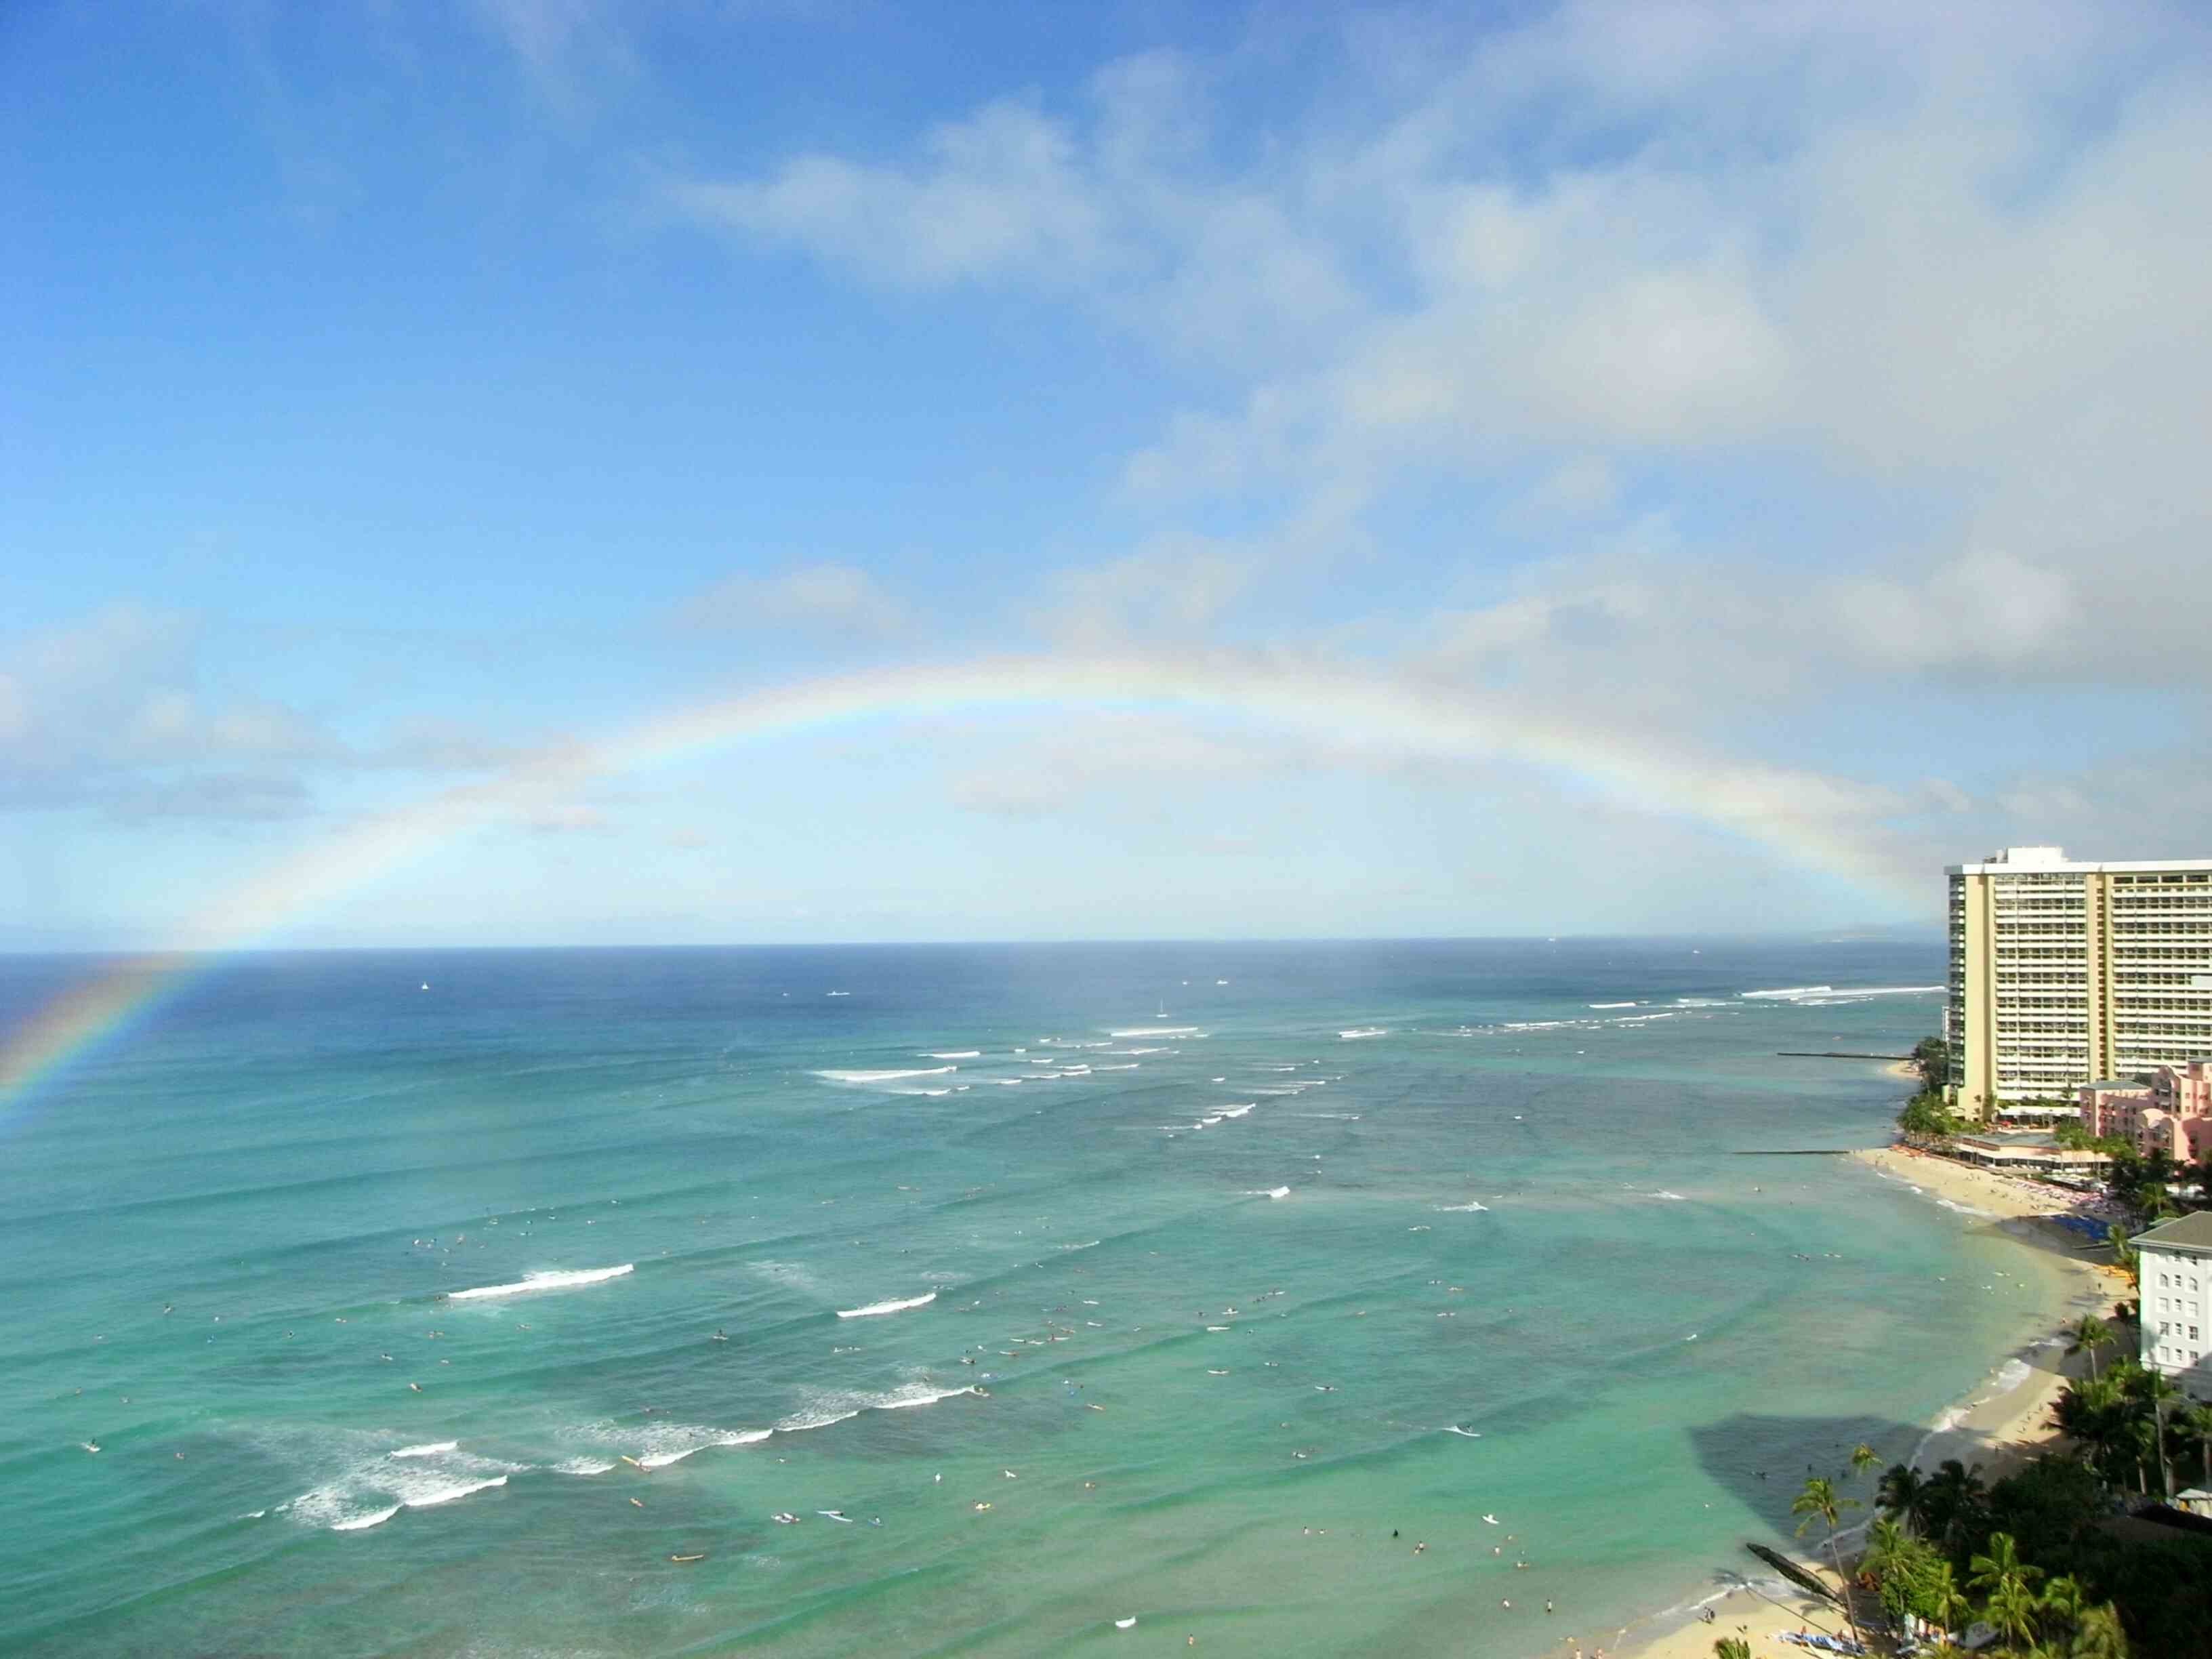 虹の起源 ハワイの神話と伝説 秘密の扉 夢を現実へと導いてくれる人生 優しい空間スピリチュアル空 人生を信じよう